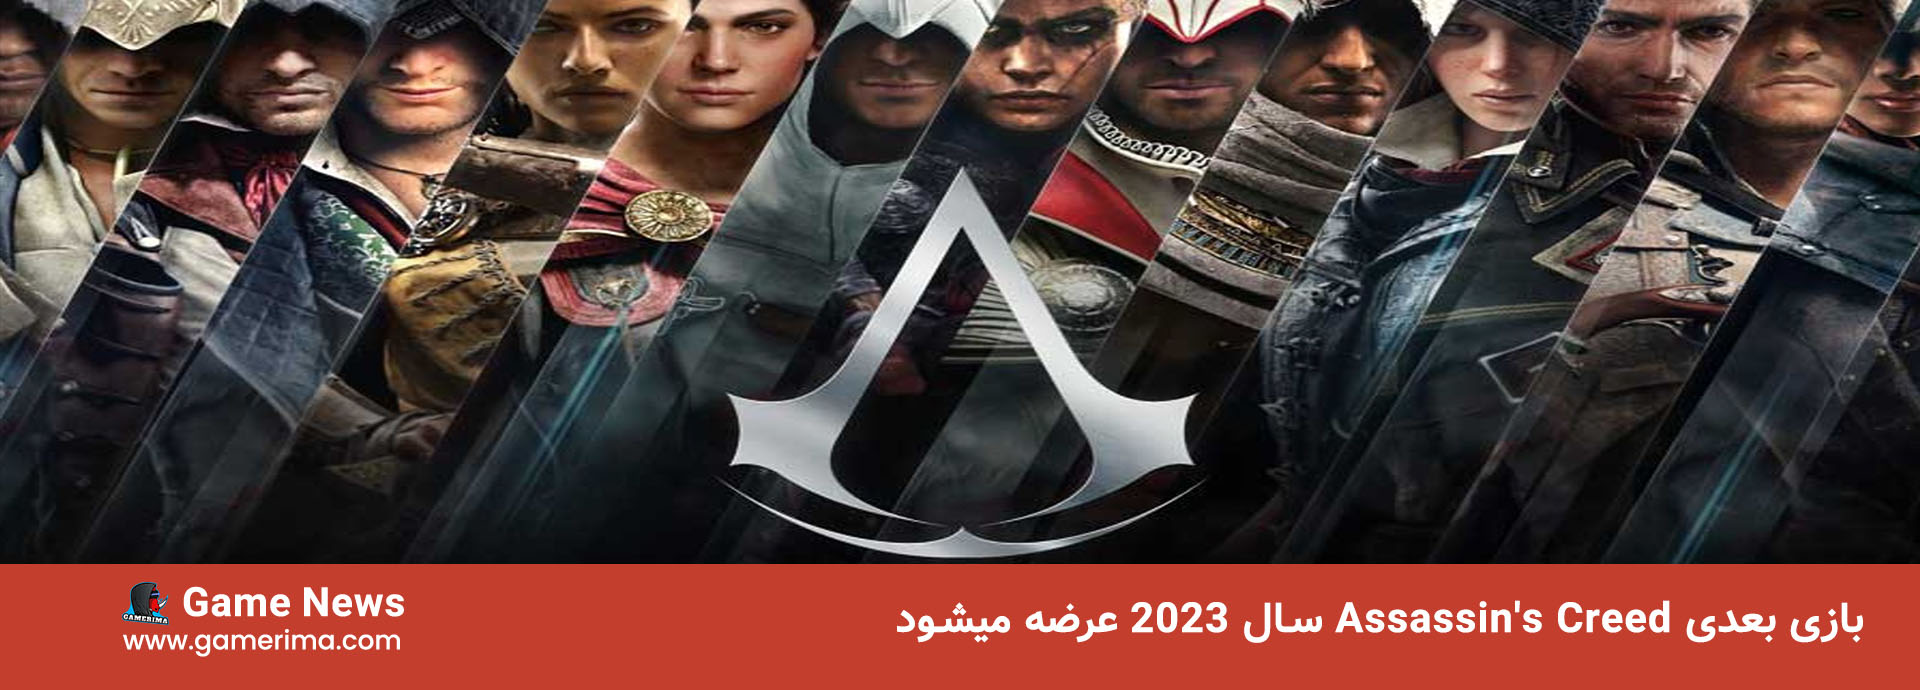 بازی بعدی Assassin’s Creed سال ۲۰۲۳ عرضه میشود